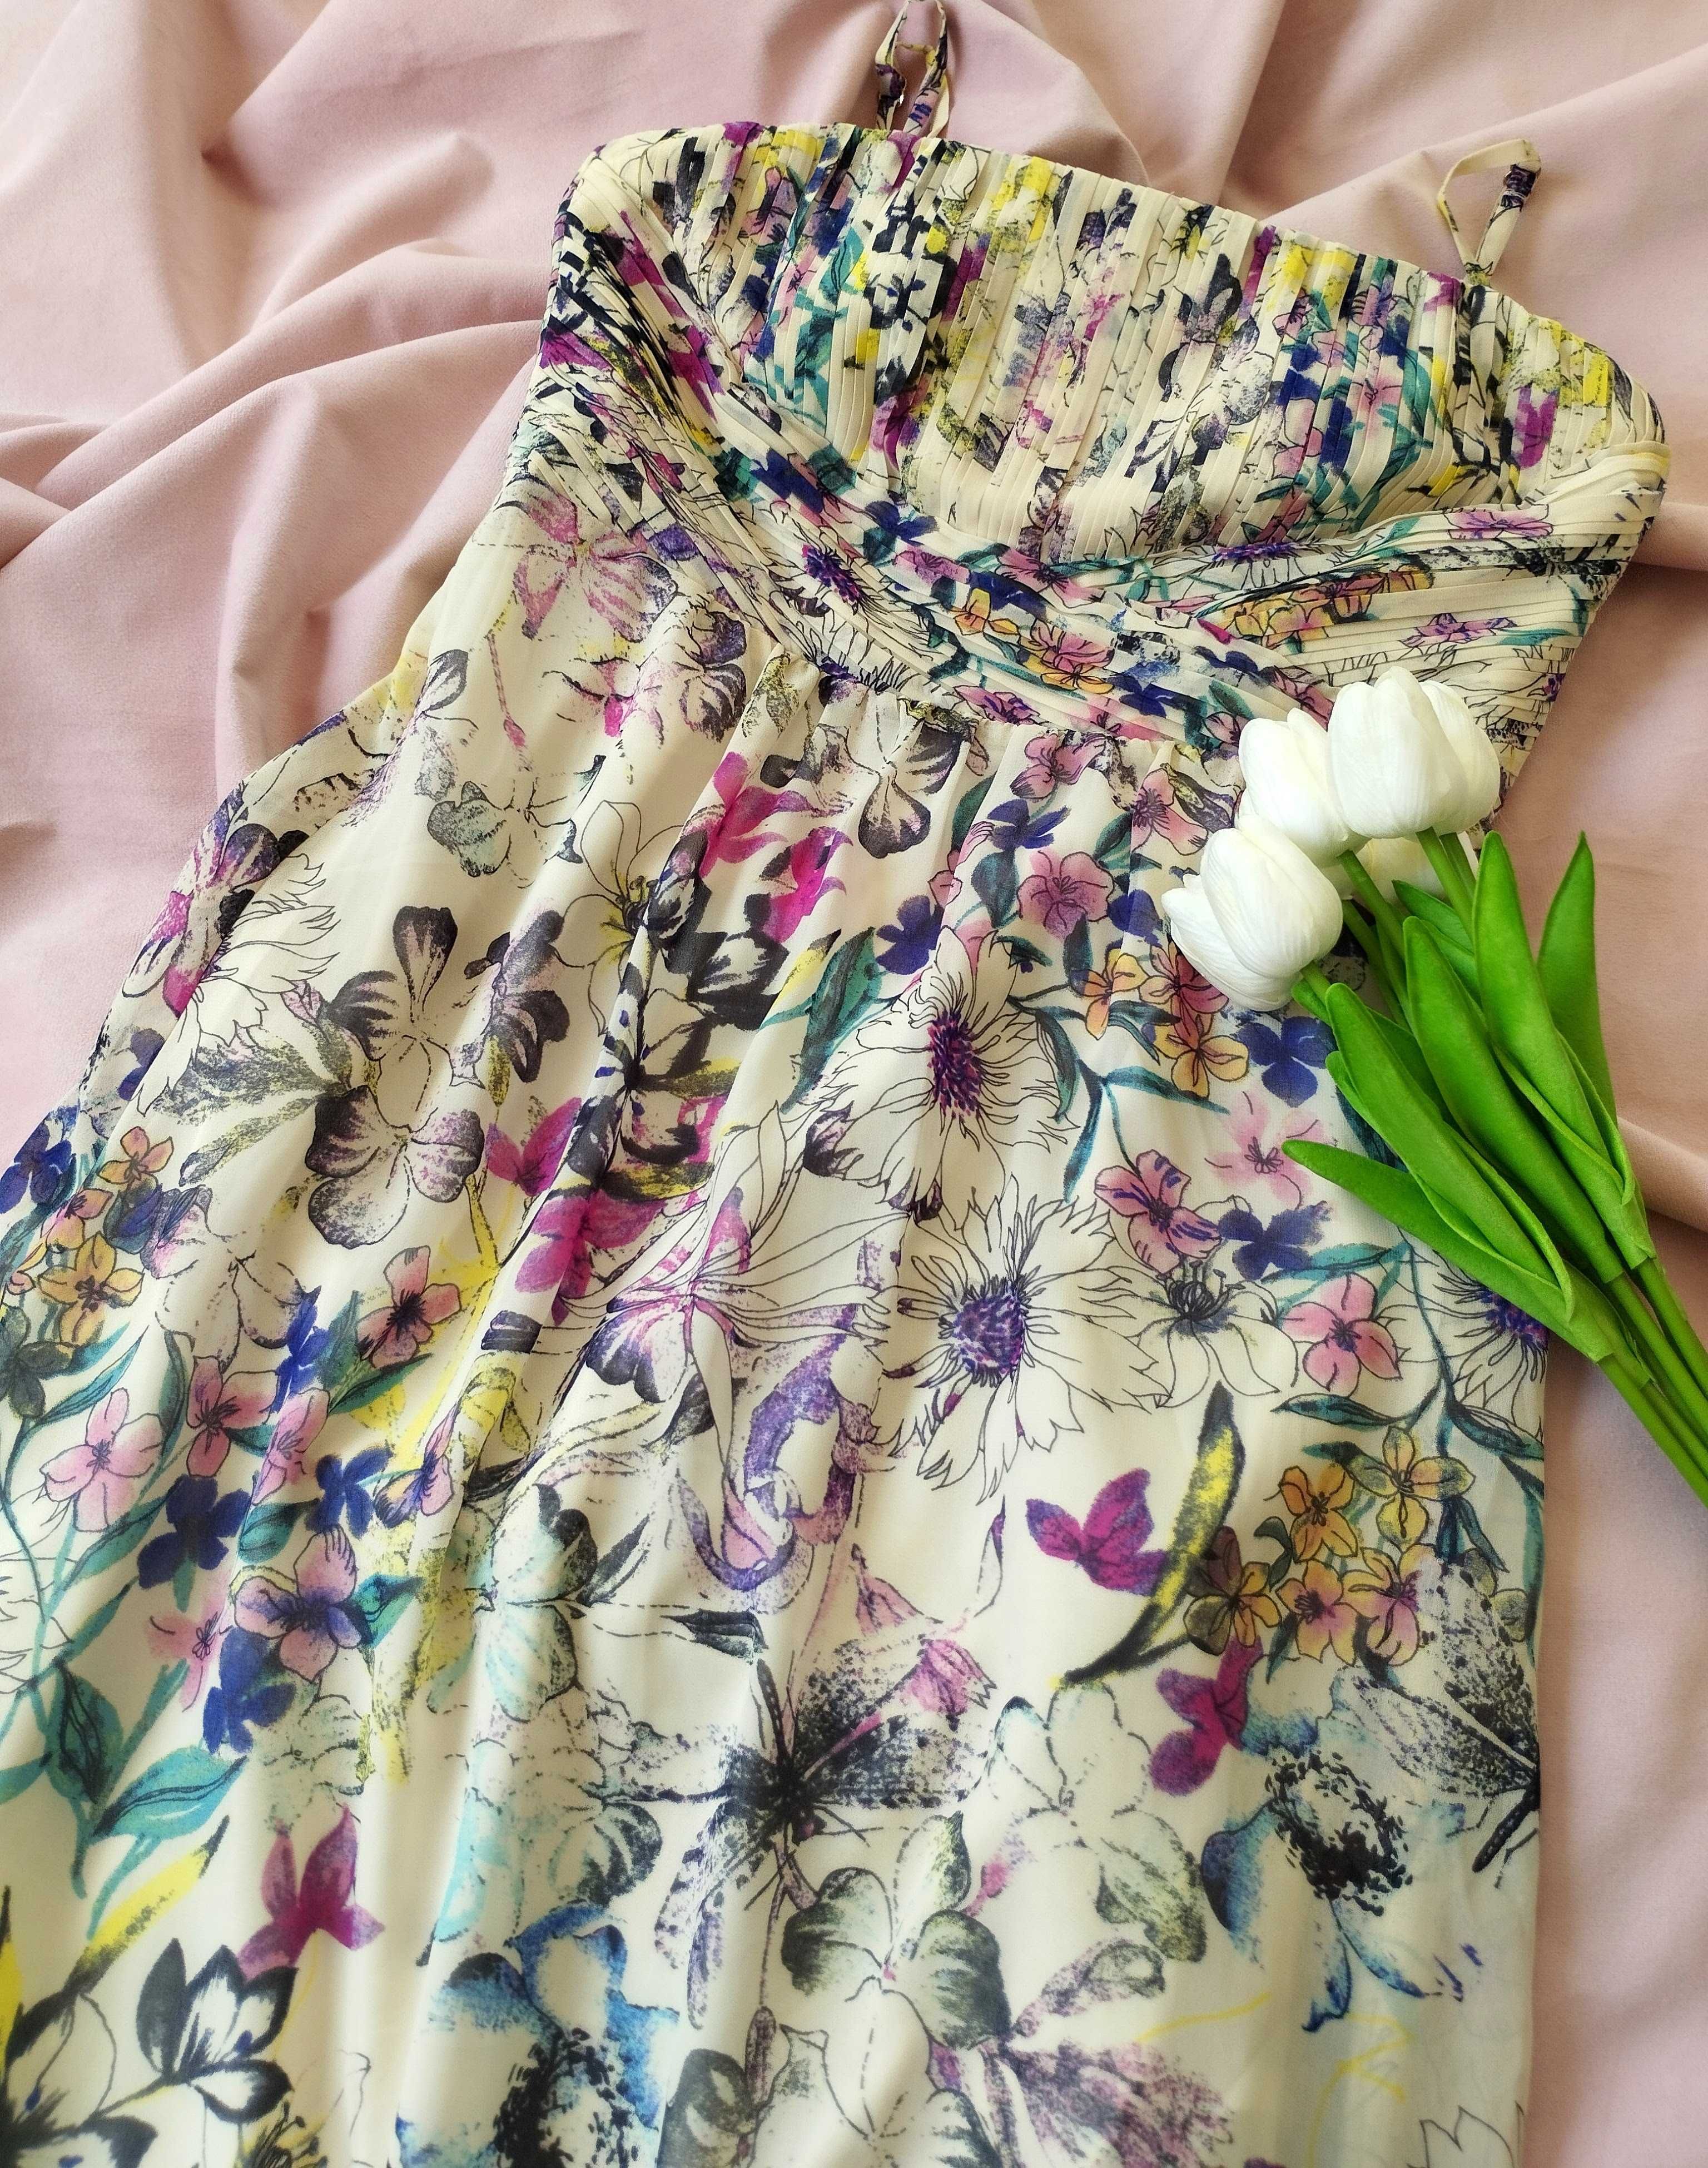 Spirit długa maxi kremowa sukienka w kwiaty. Rozmiar XS / S